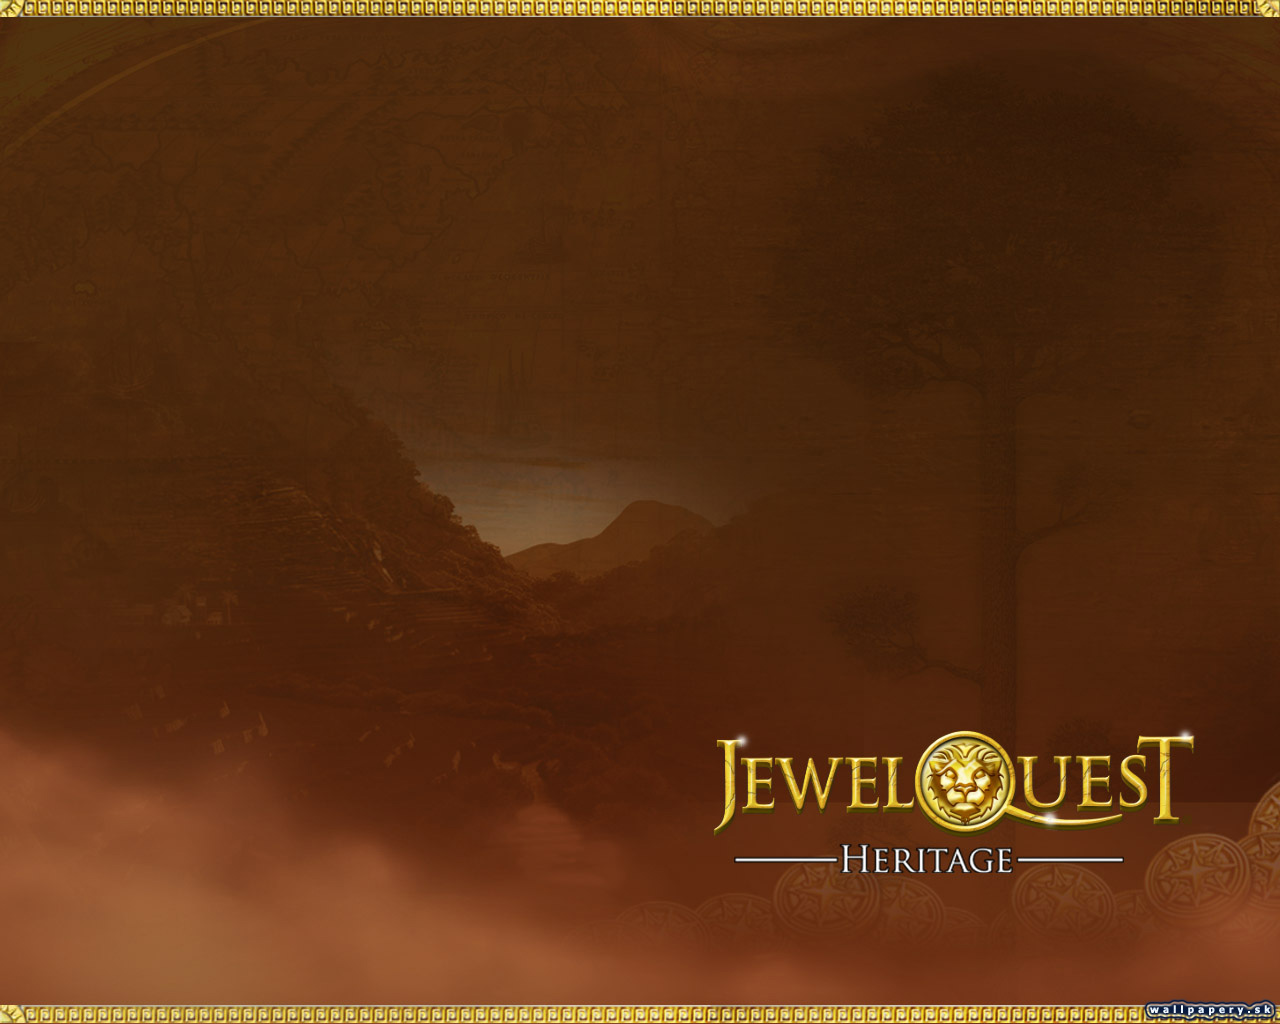 Jewel Quest: Heritage - wallpaper 2